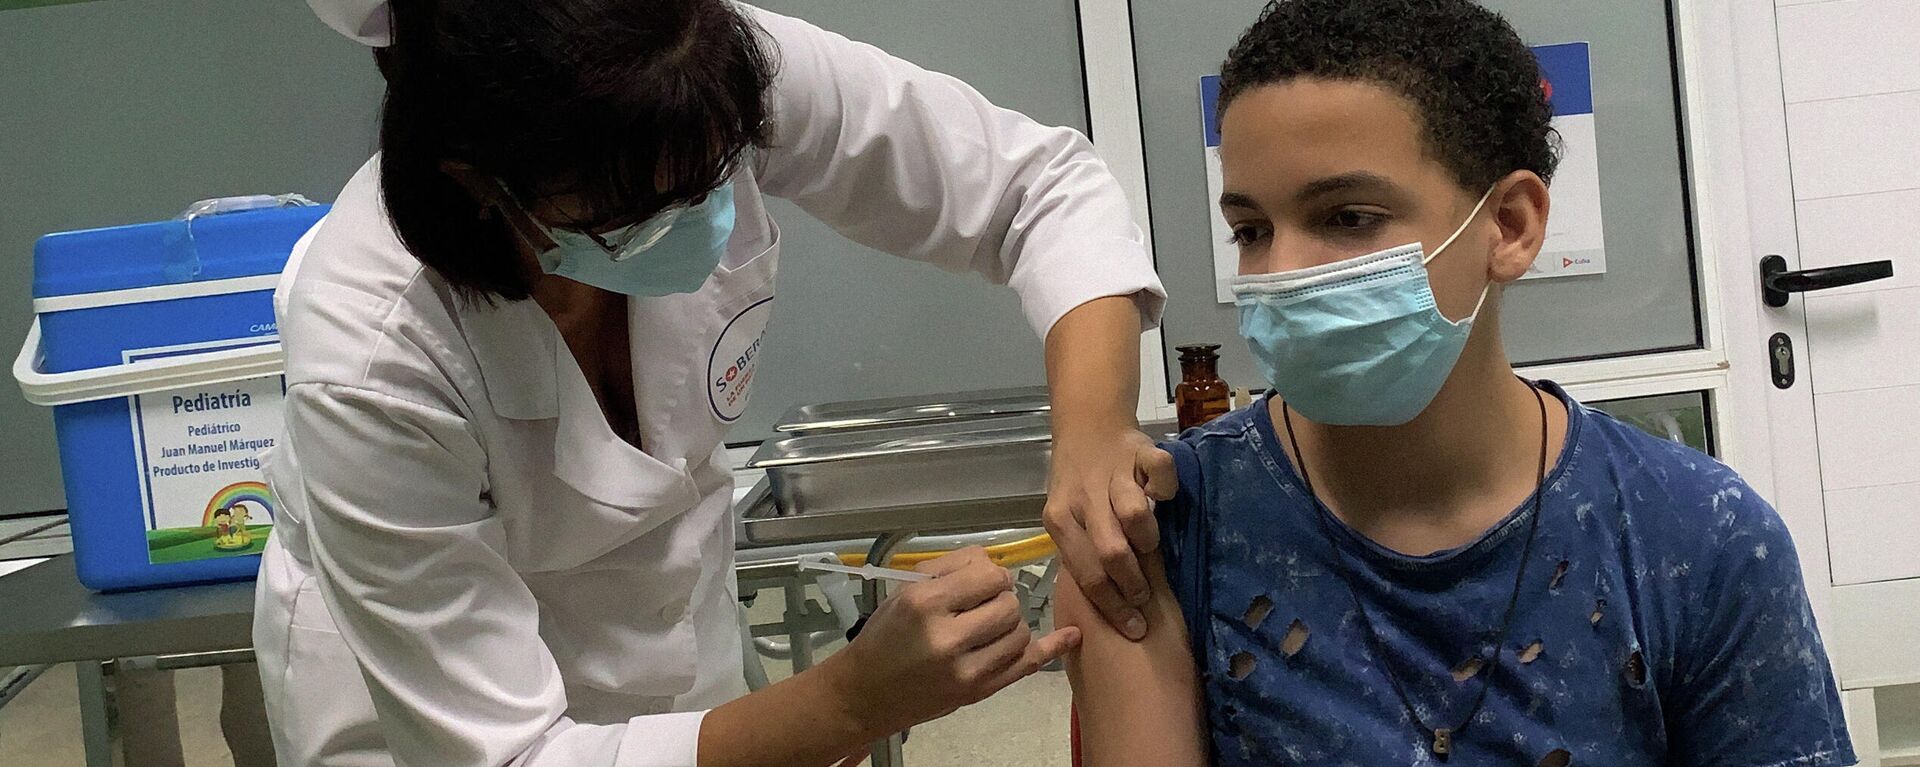 Menino cubano de 13 anos recebe a vacina cubana Soberana Plus contra a COVID-19, em 24 de agosto de 2021, no hospital Juan Manuel Márquez, em Havana, durante os testes do imunizante em crianças e adolescentes - Sputnik Brasil, 1920, 07.12.2021